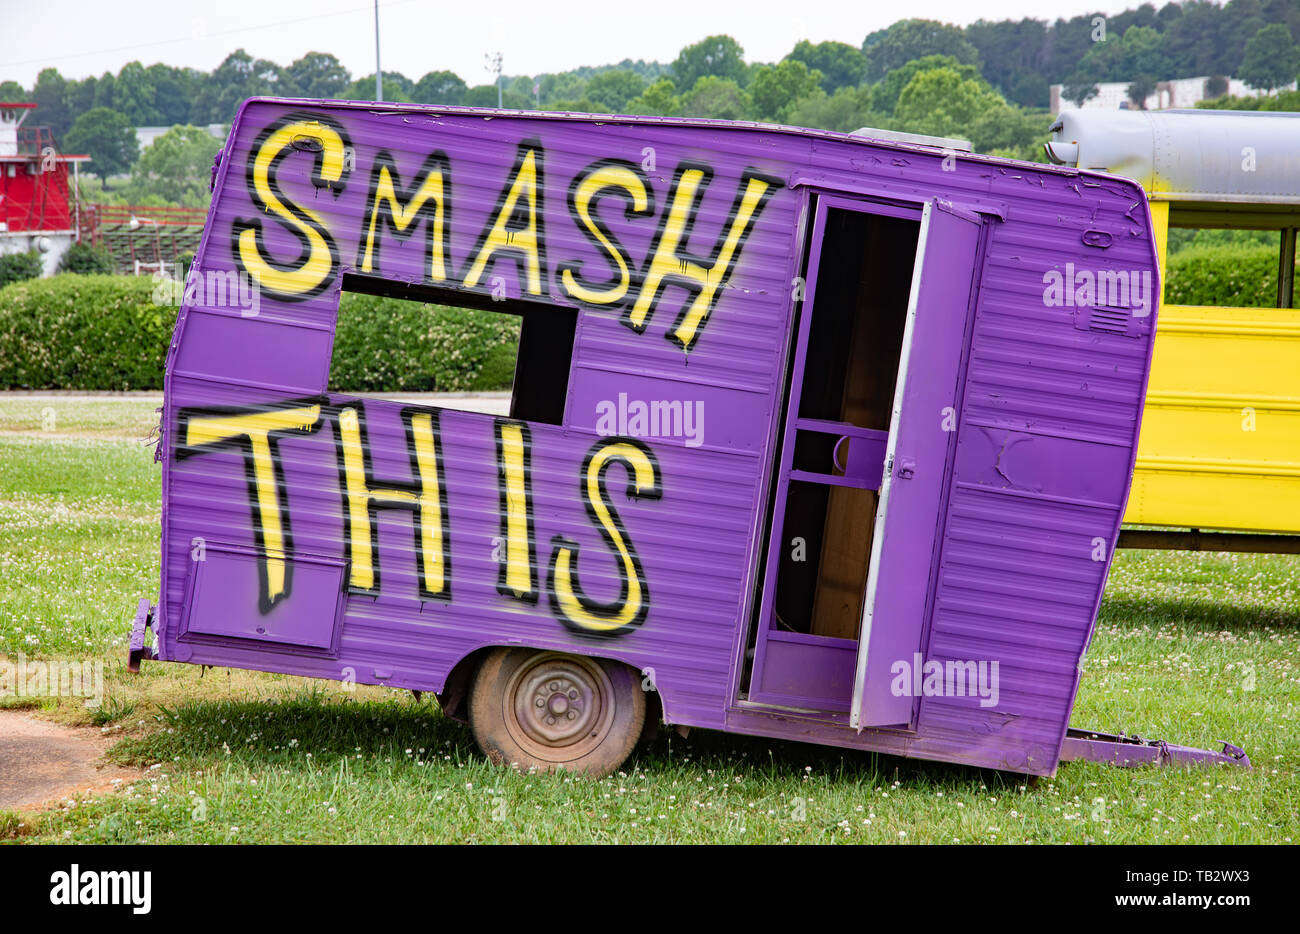 NEWTON, NC, USA--5/22/19: Alte Camping trailer zerlegt und lackiert Für den Einsatz im Rennsport/Absturz Ereignis. Stockfoto